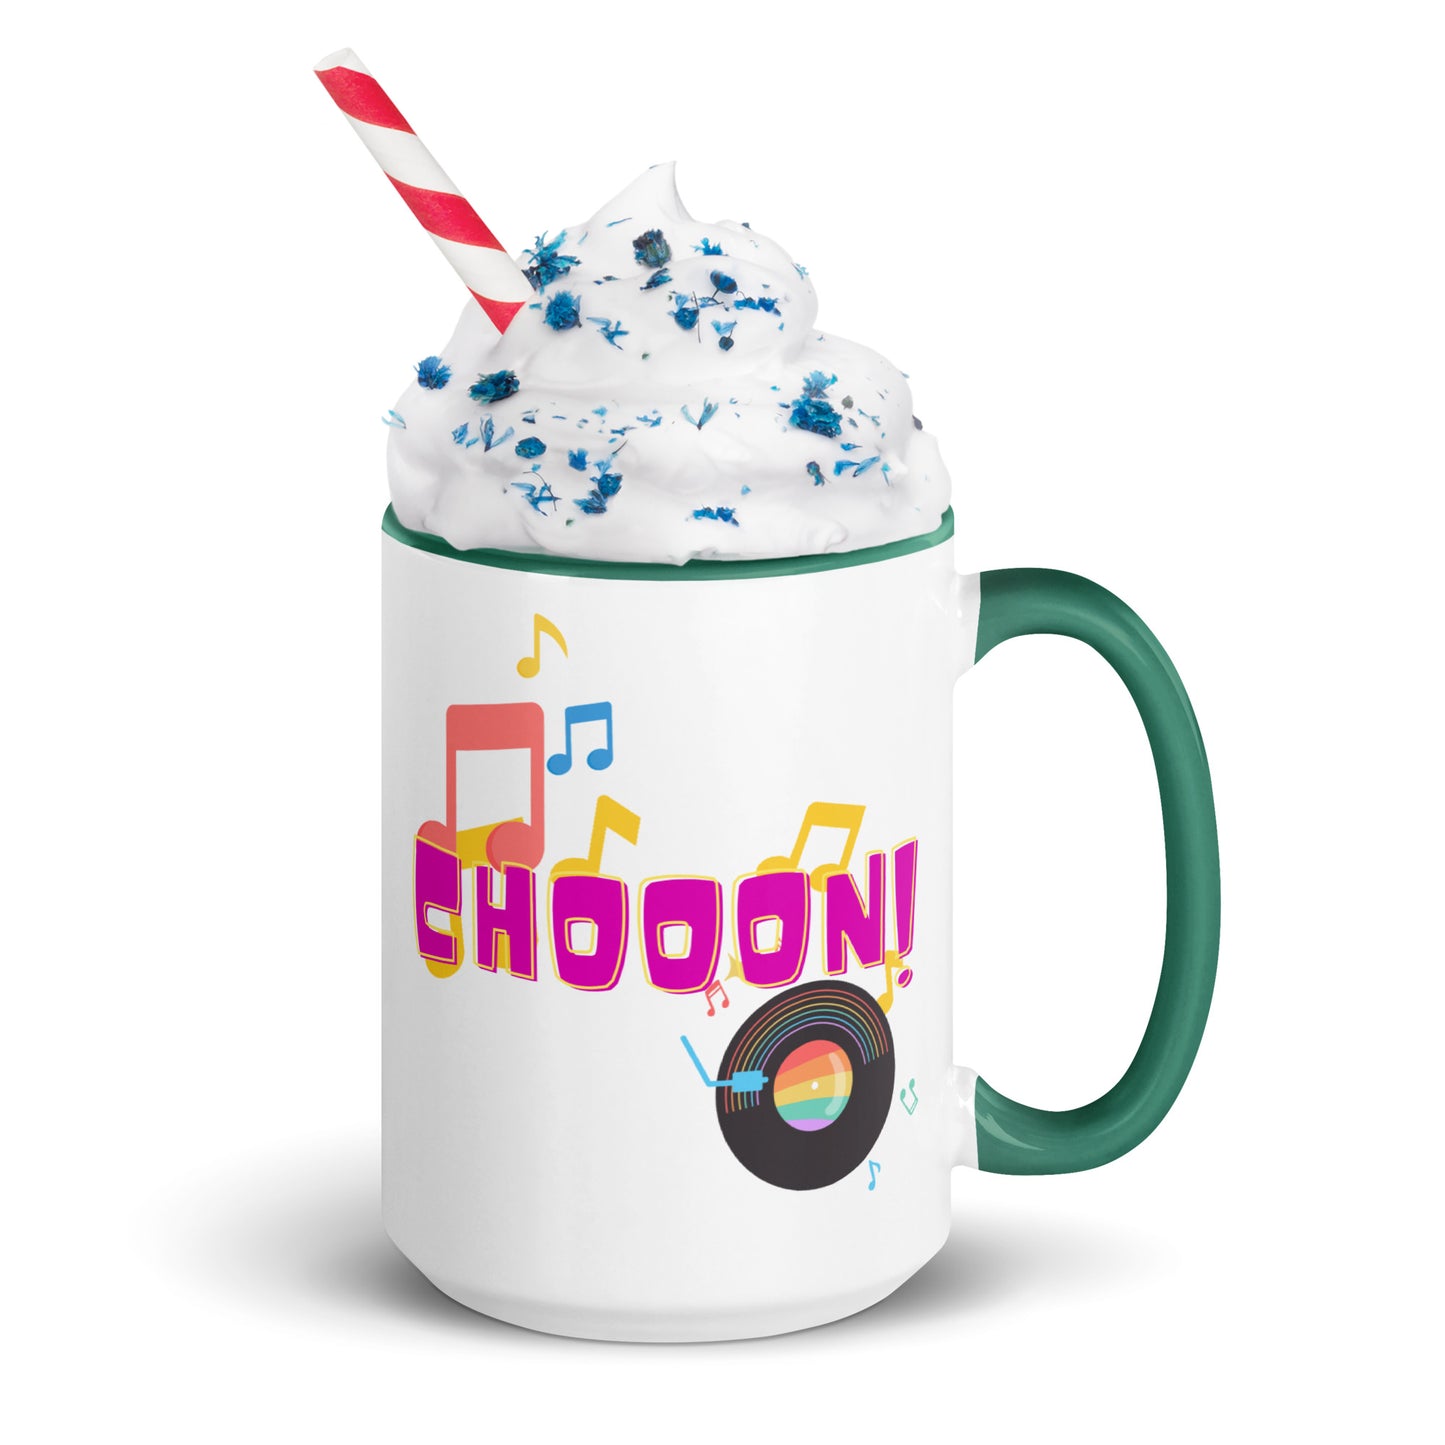 Indie Music Hunt Chooon! Mug With Color Inside